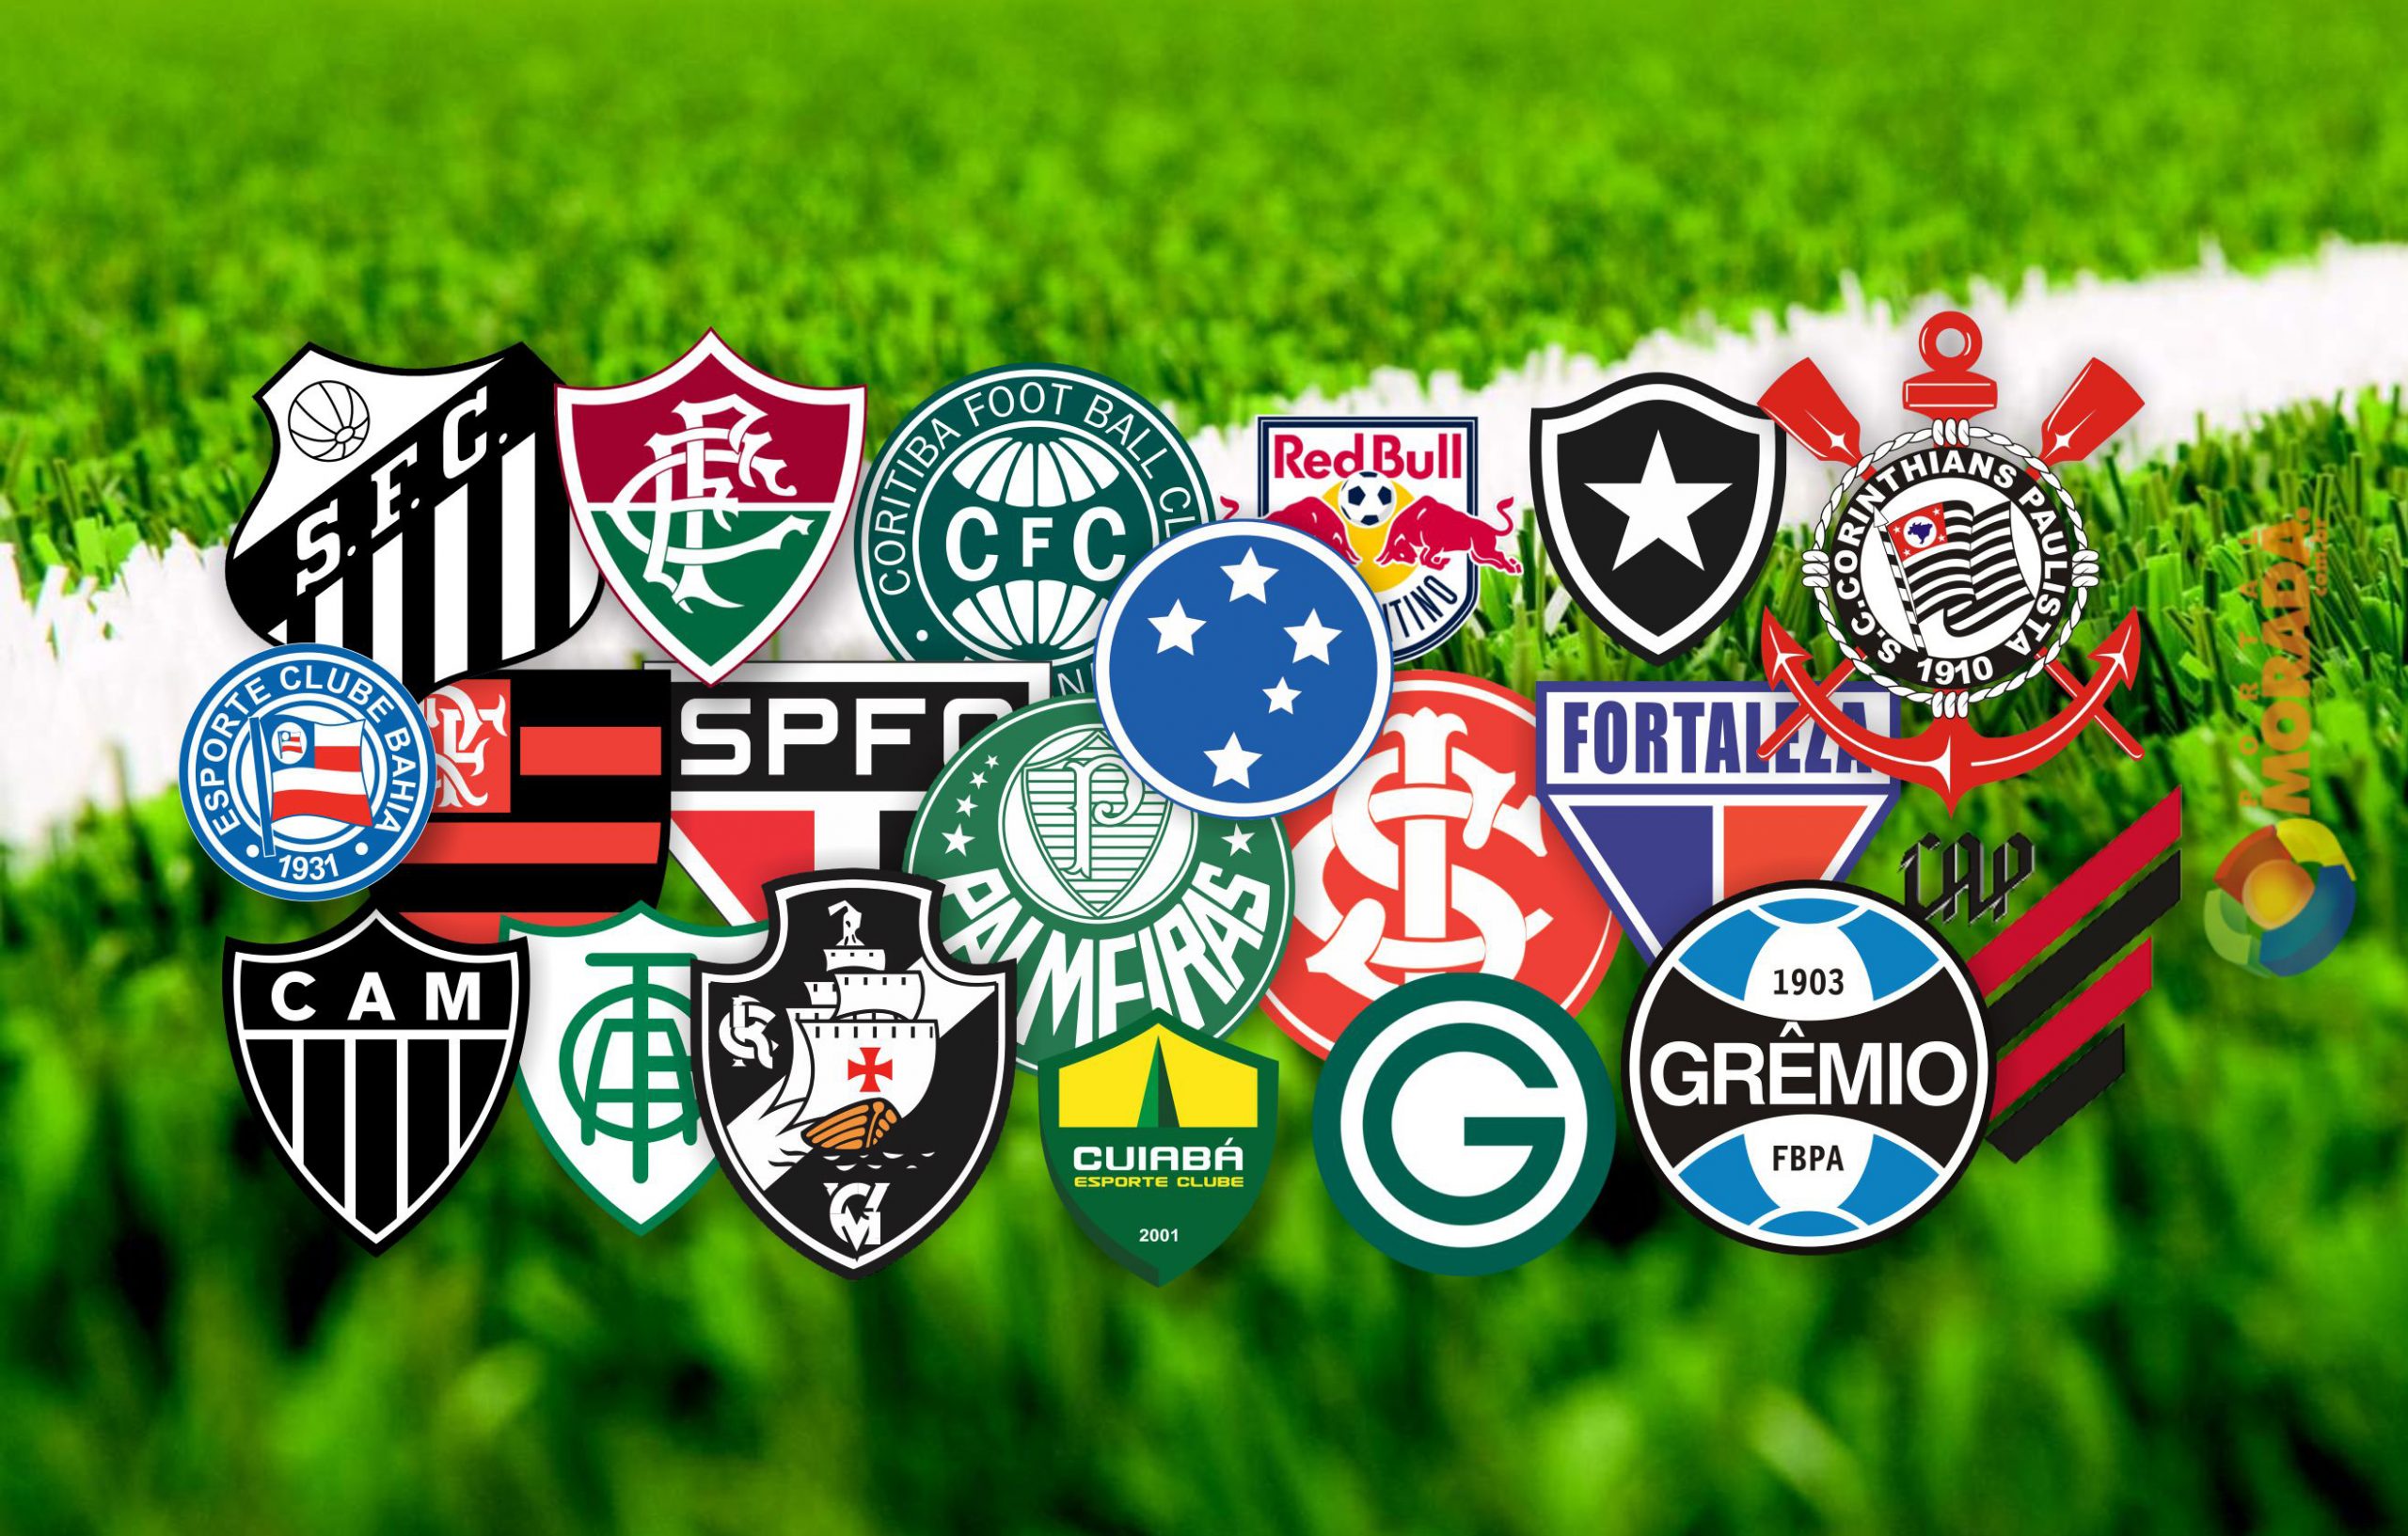 Brasileirão 2023: Acompanhe seu time favorito e divirta-se com